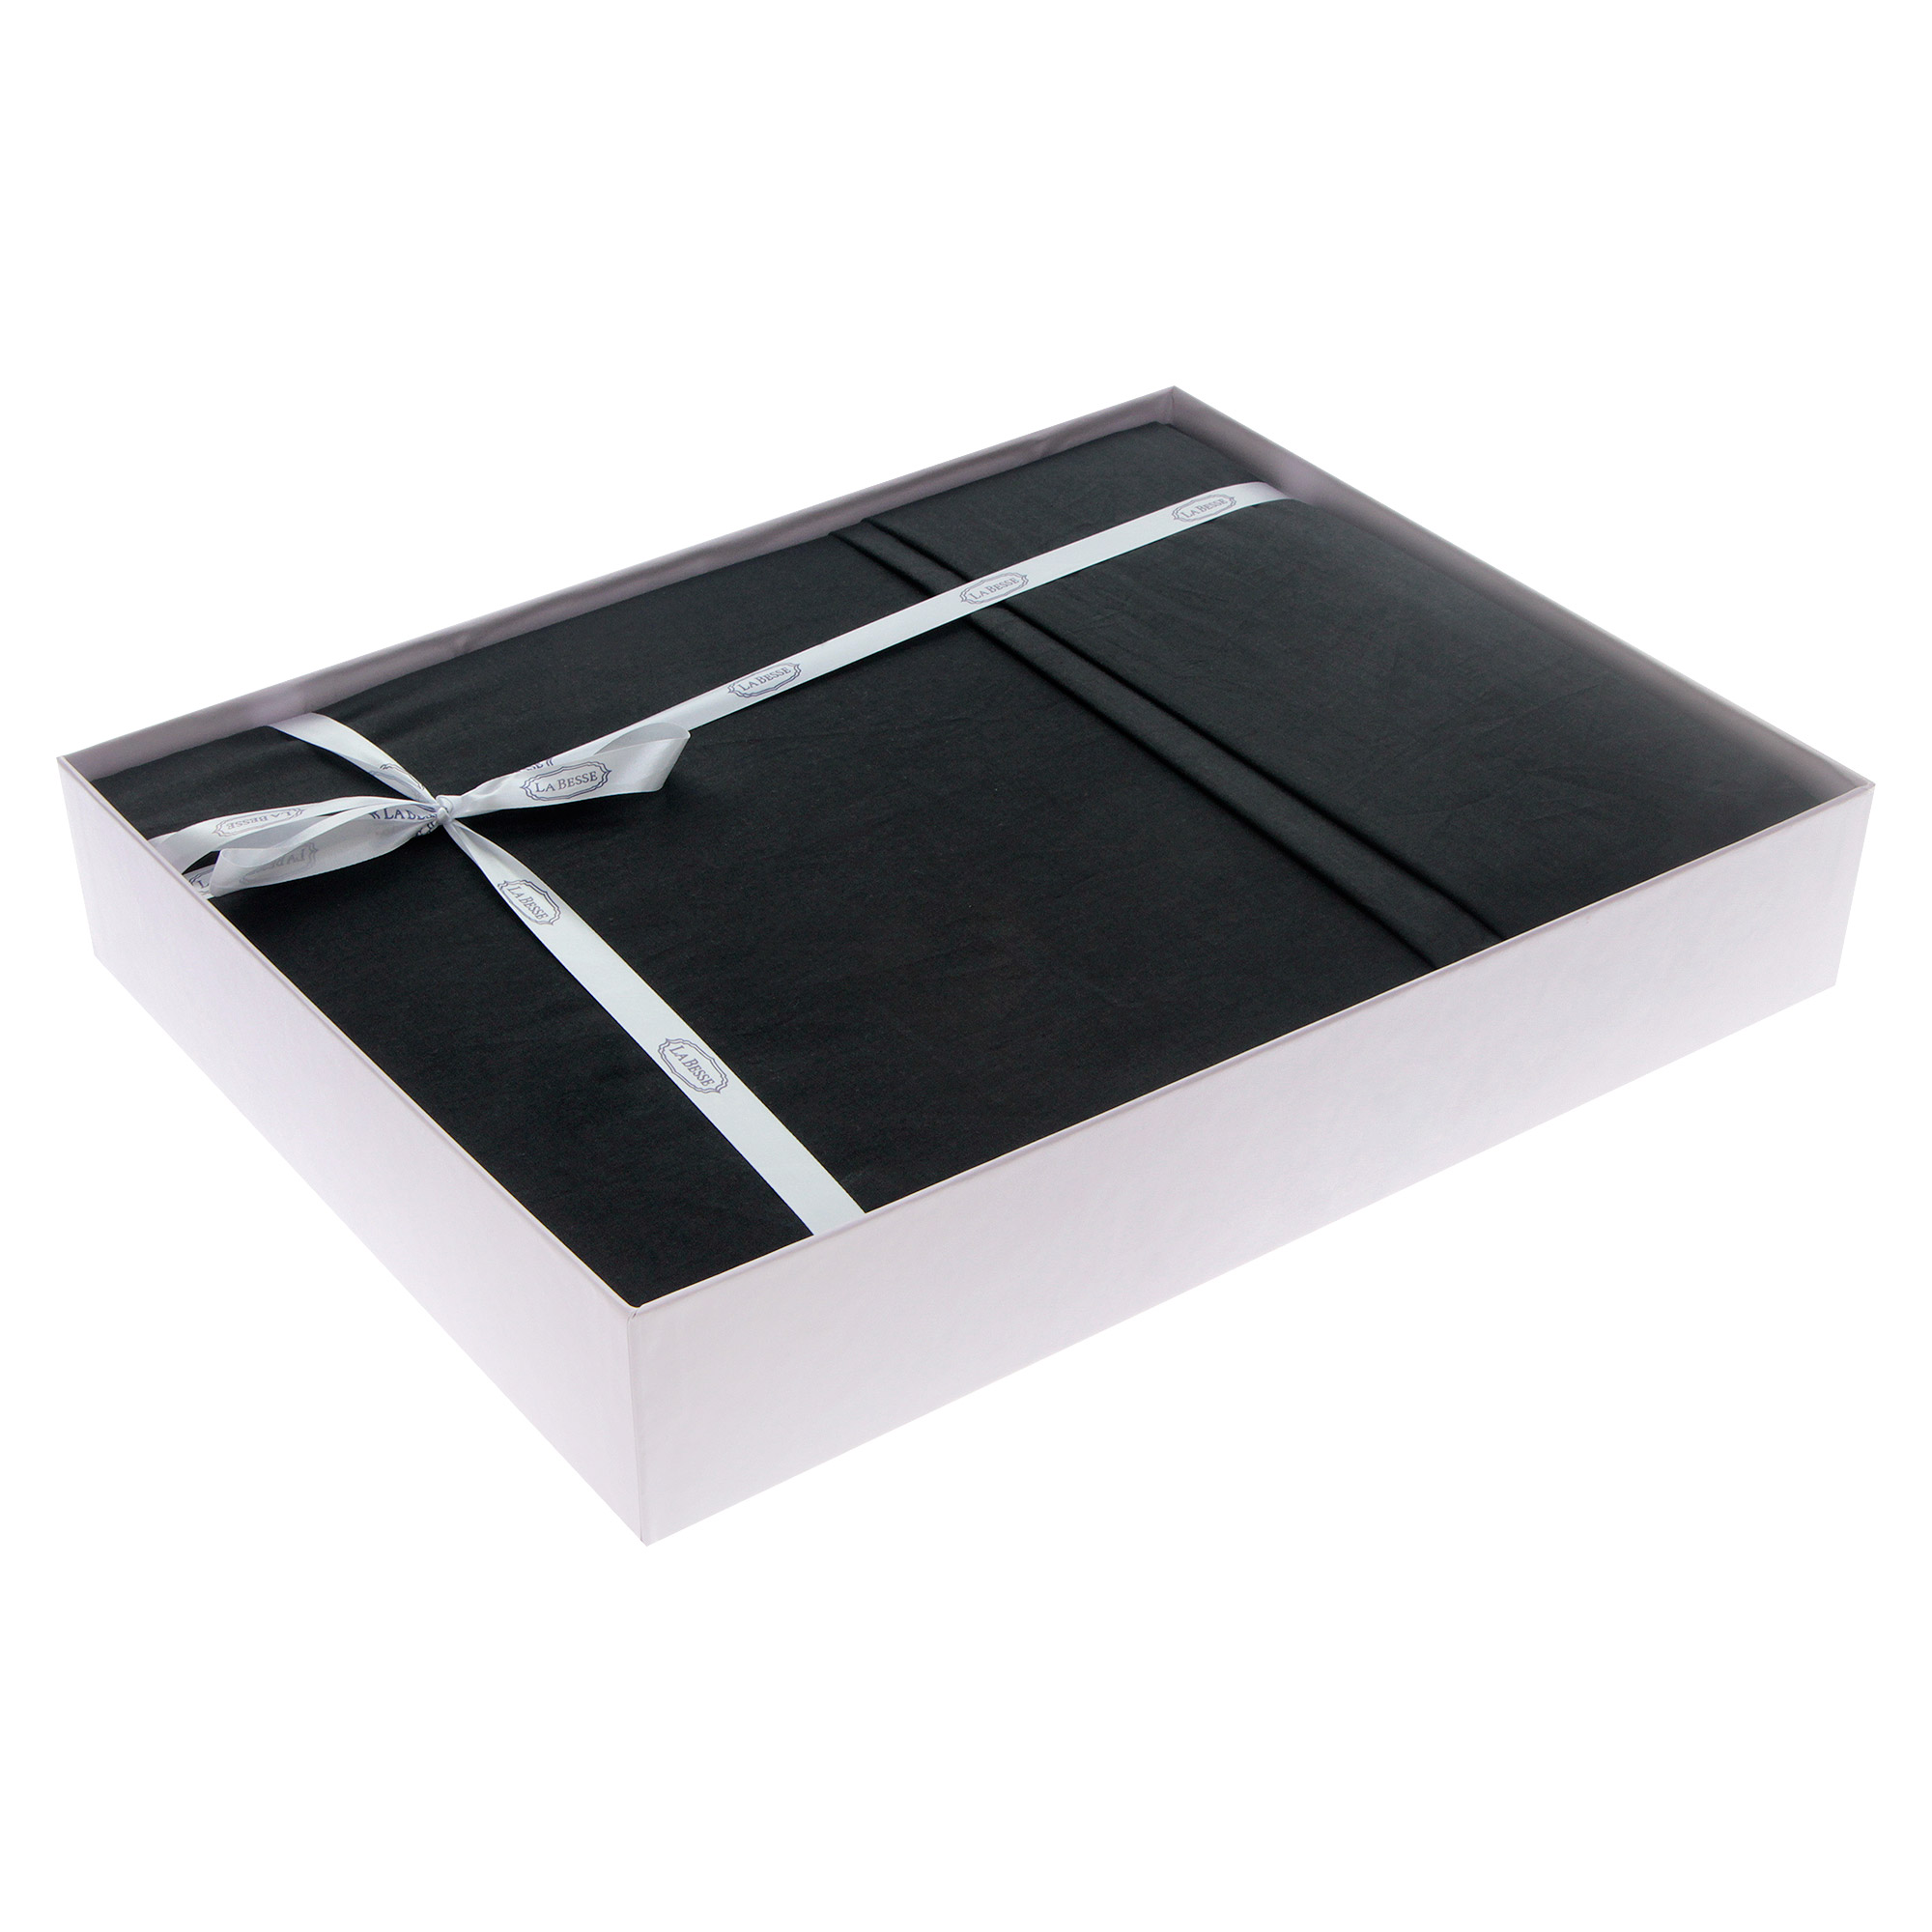 Комплект постельного белья La Besse Ранфорс чёрный Кинг сайз, размер Кинг сайз - фото 2